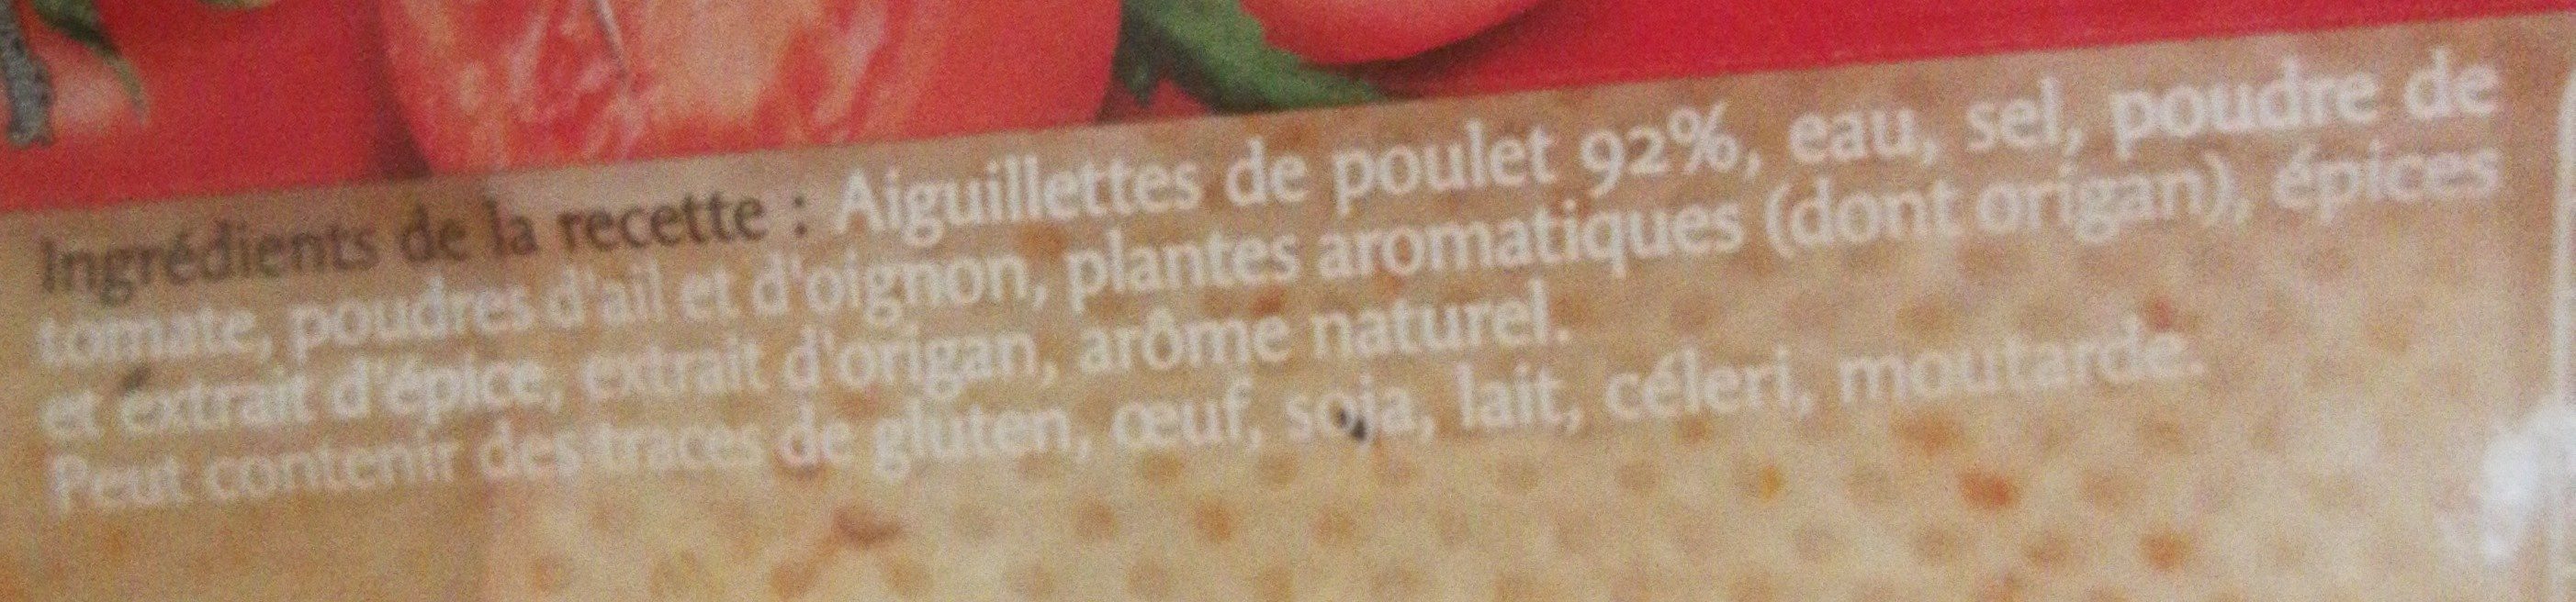 Poulet tomates origan - Ingredients - fr